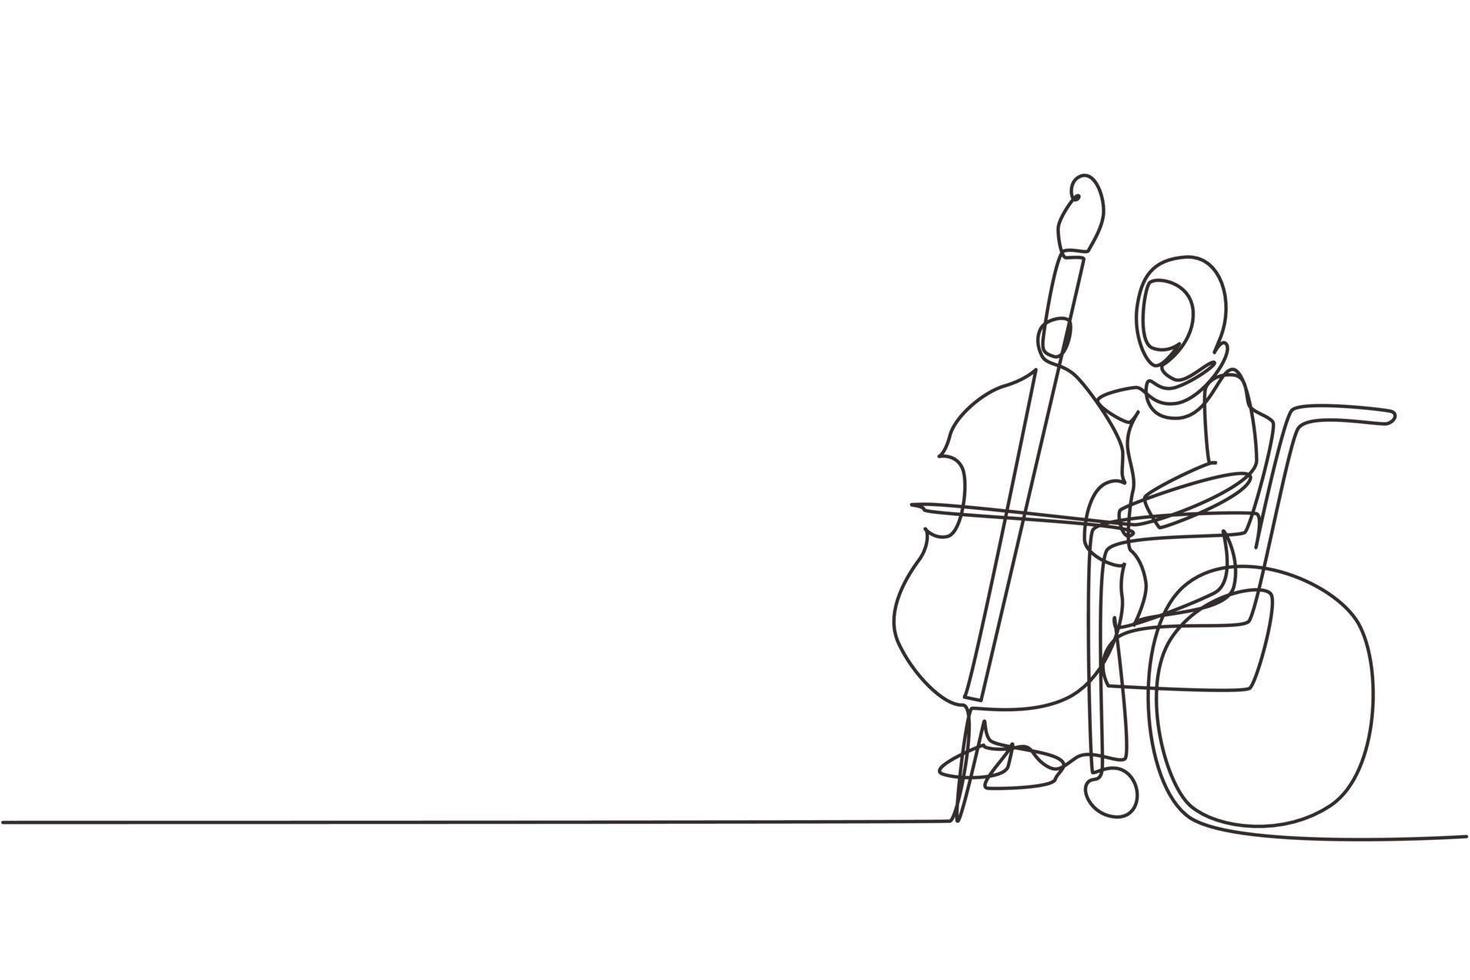 einzelne eine Strichzeichnung arabische Frau, die im Rollstuhl sitzt, spielt Cello im Konzert. Behinderung und klassische Musik. körperlich behindert. Patient des Rehabilitationszentrums. Designvektor mit durchgehender Linie vektor